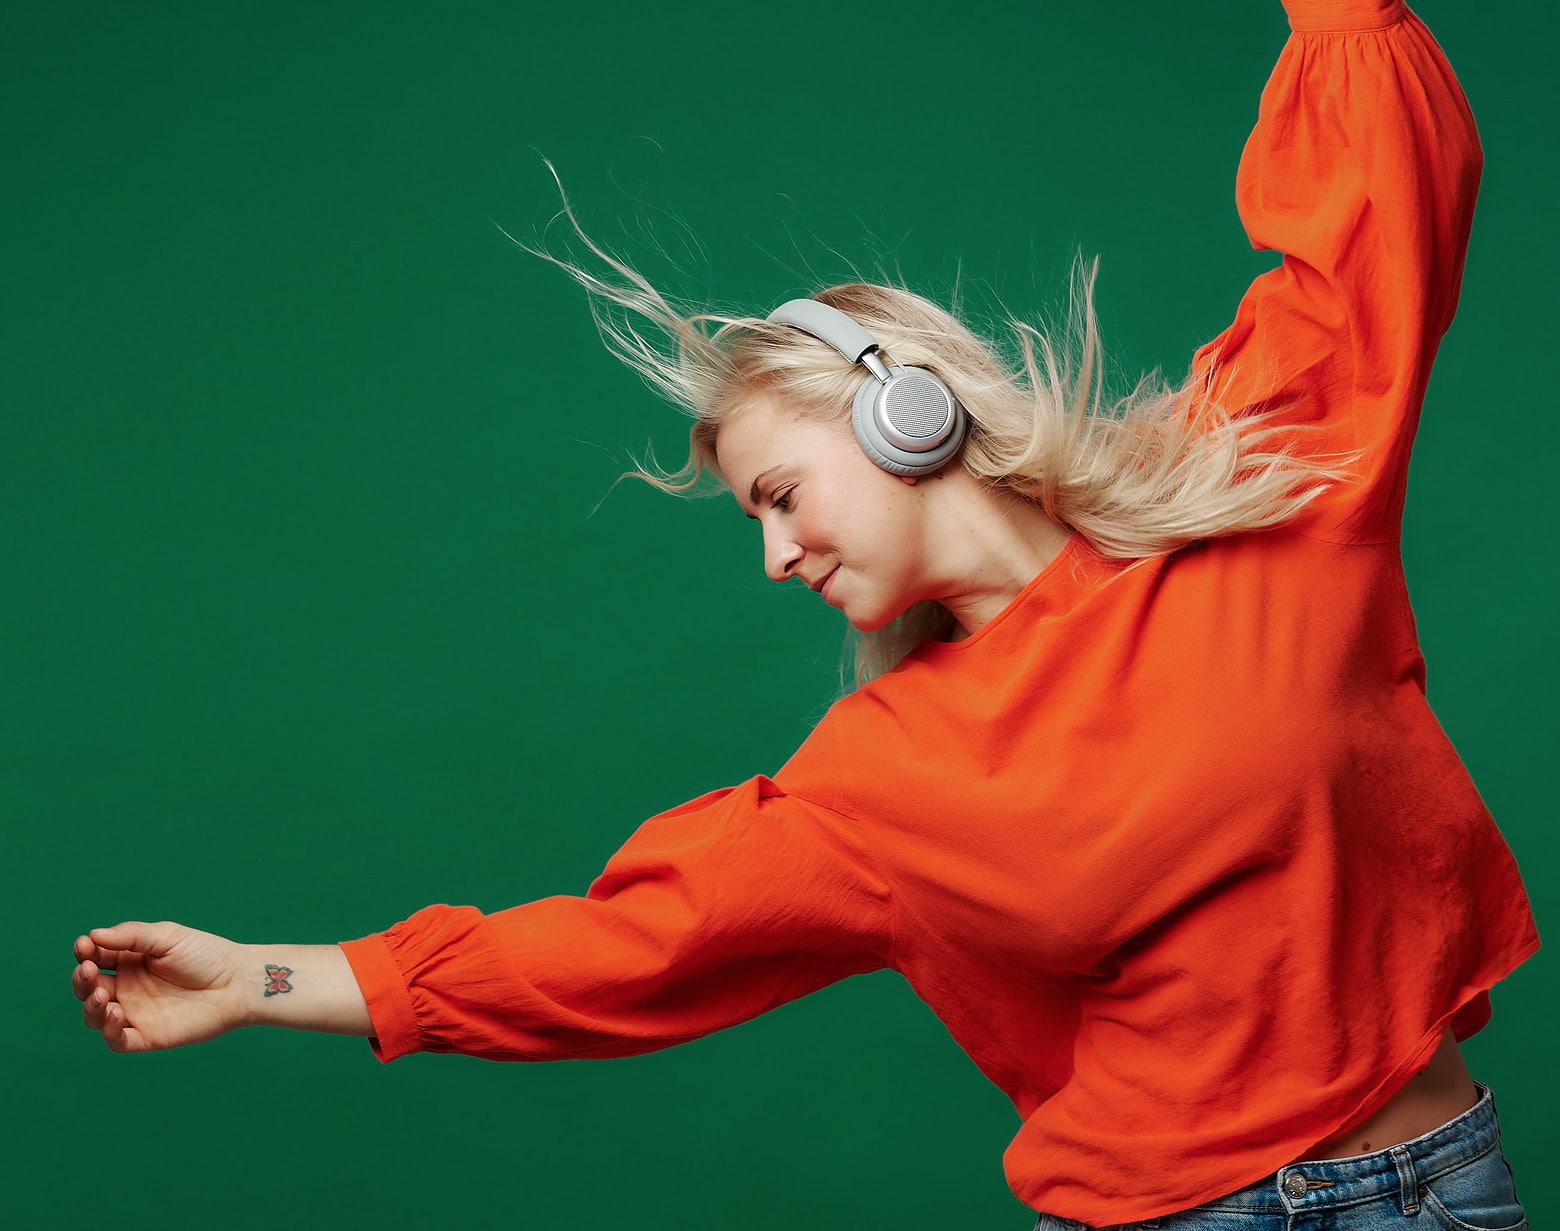 grå udgave på dansende kvinde - test af touchit hovedtelefoner med aktiv noise cancellation støjreduktion hovedtelefoner med støjdæmpning anmeldelse